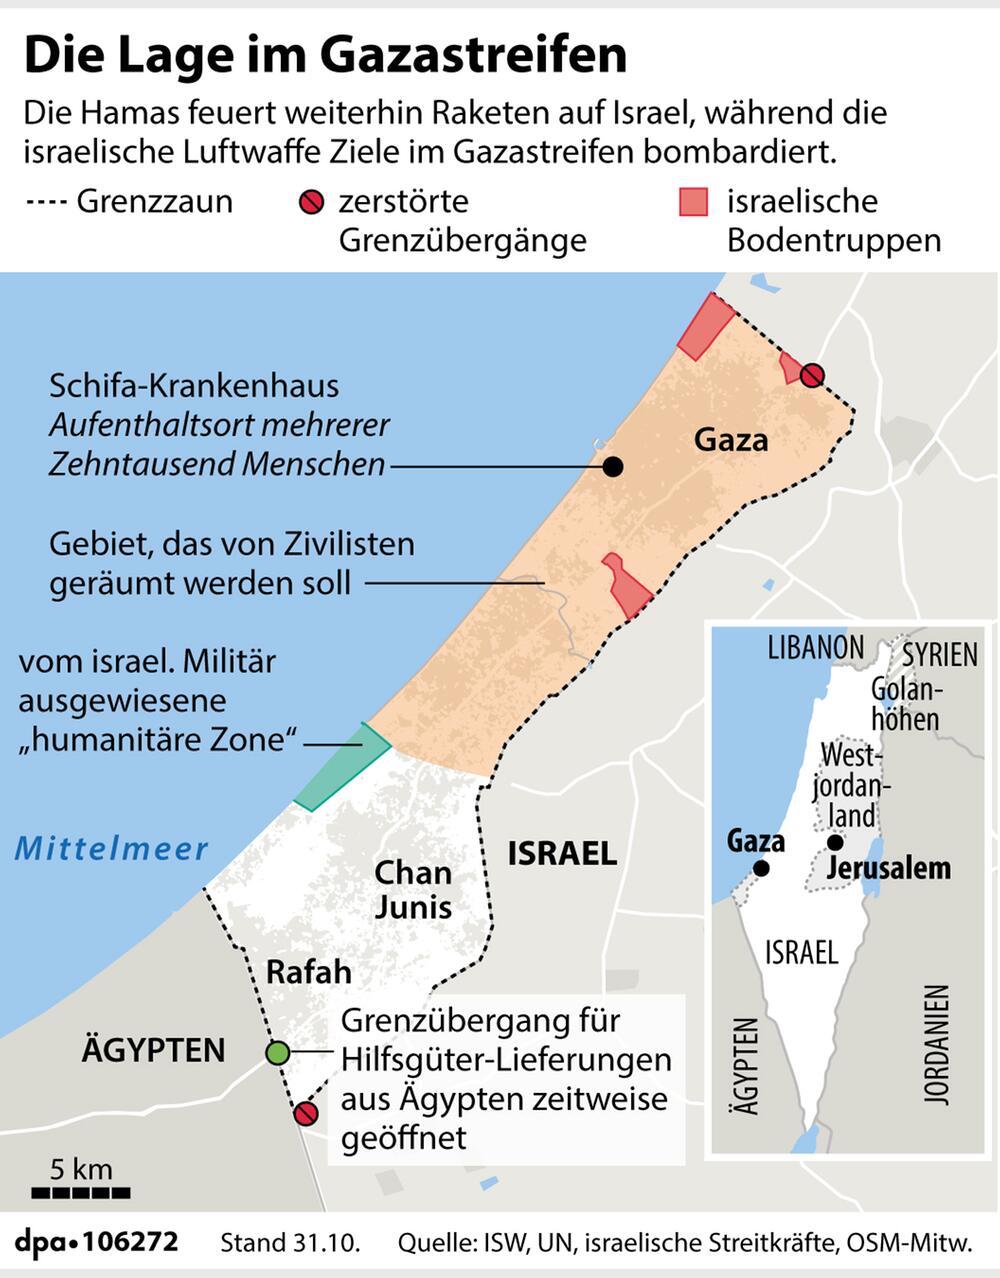 Karte zur Situation im Gazastreifen